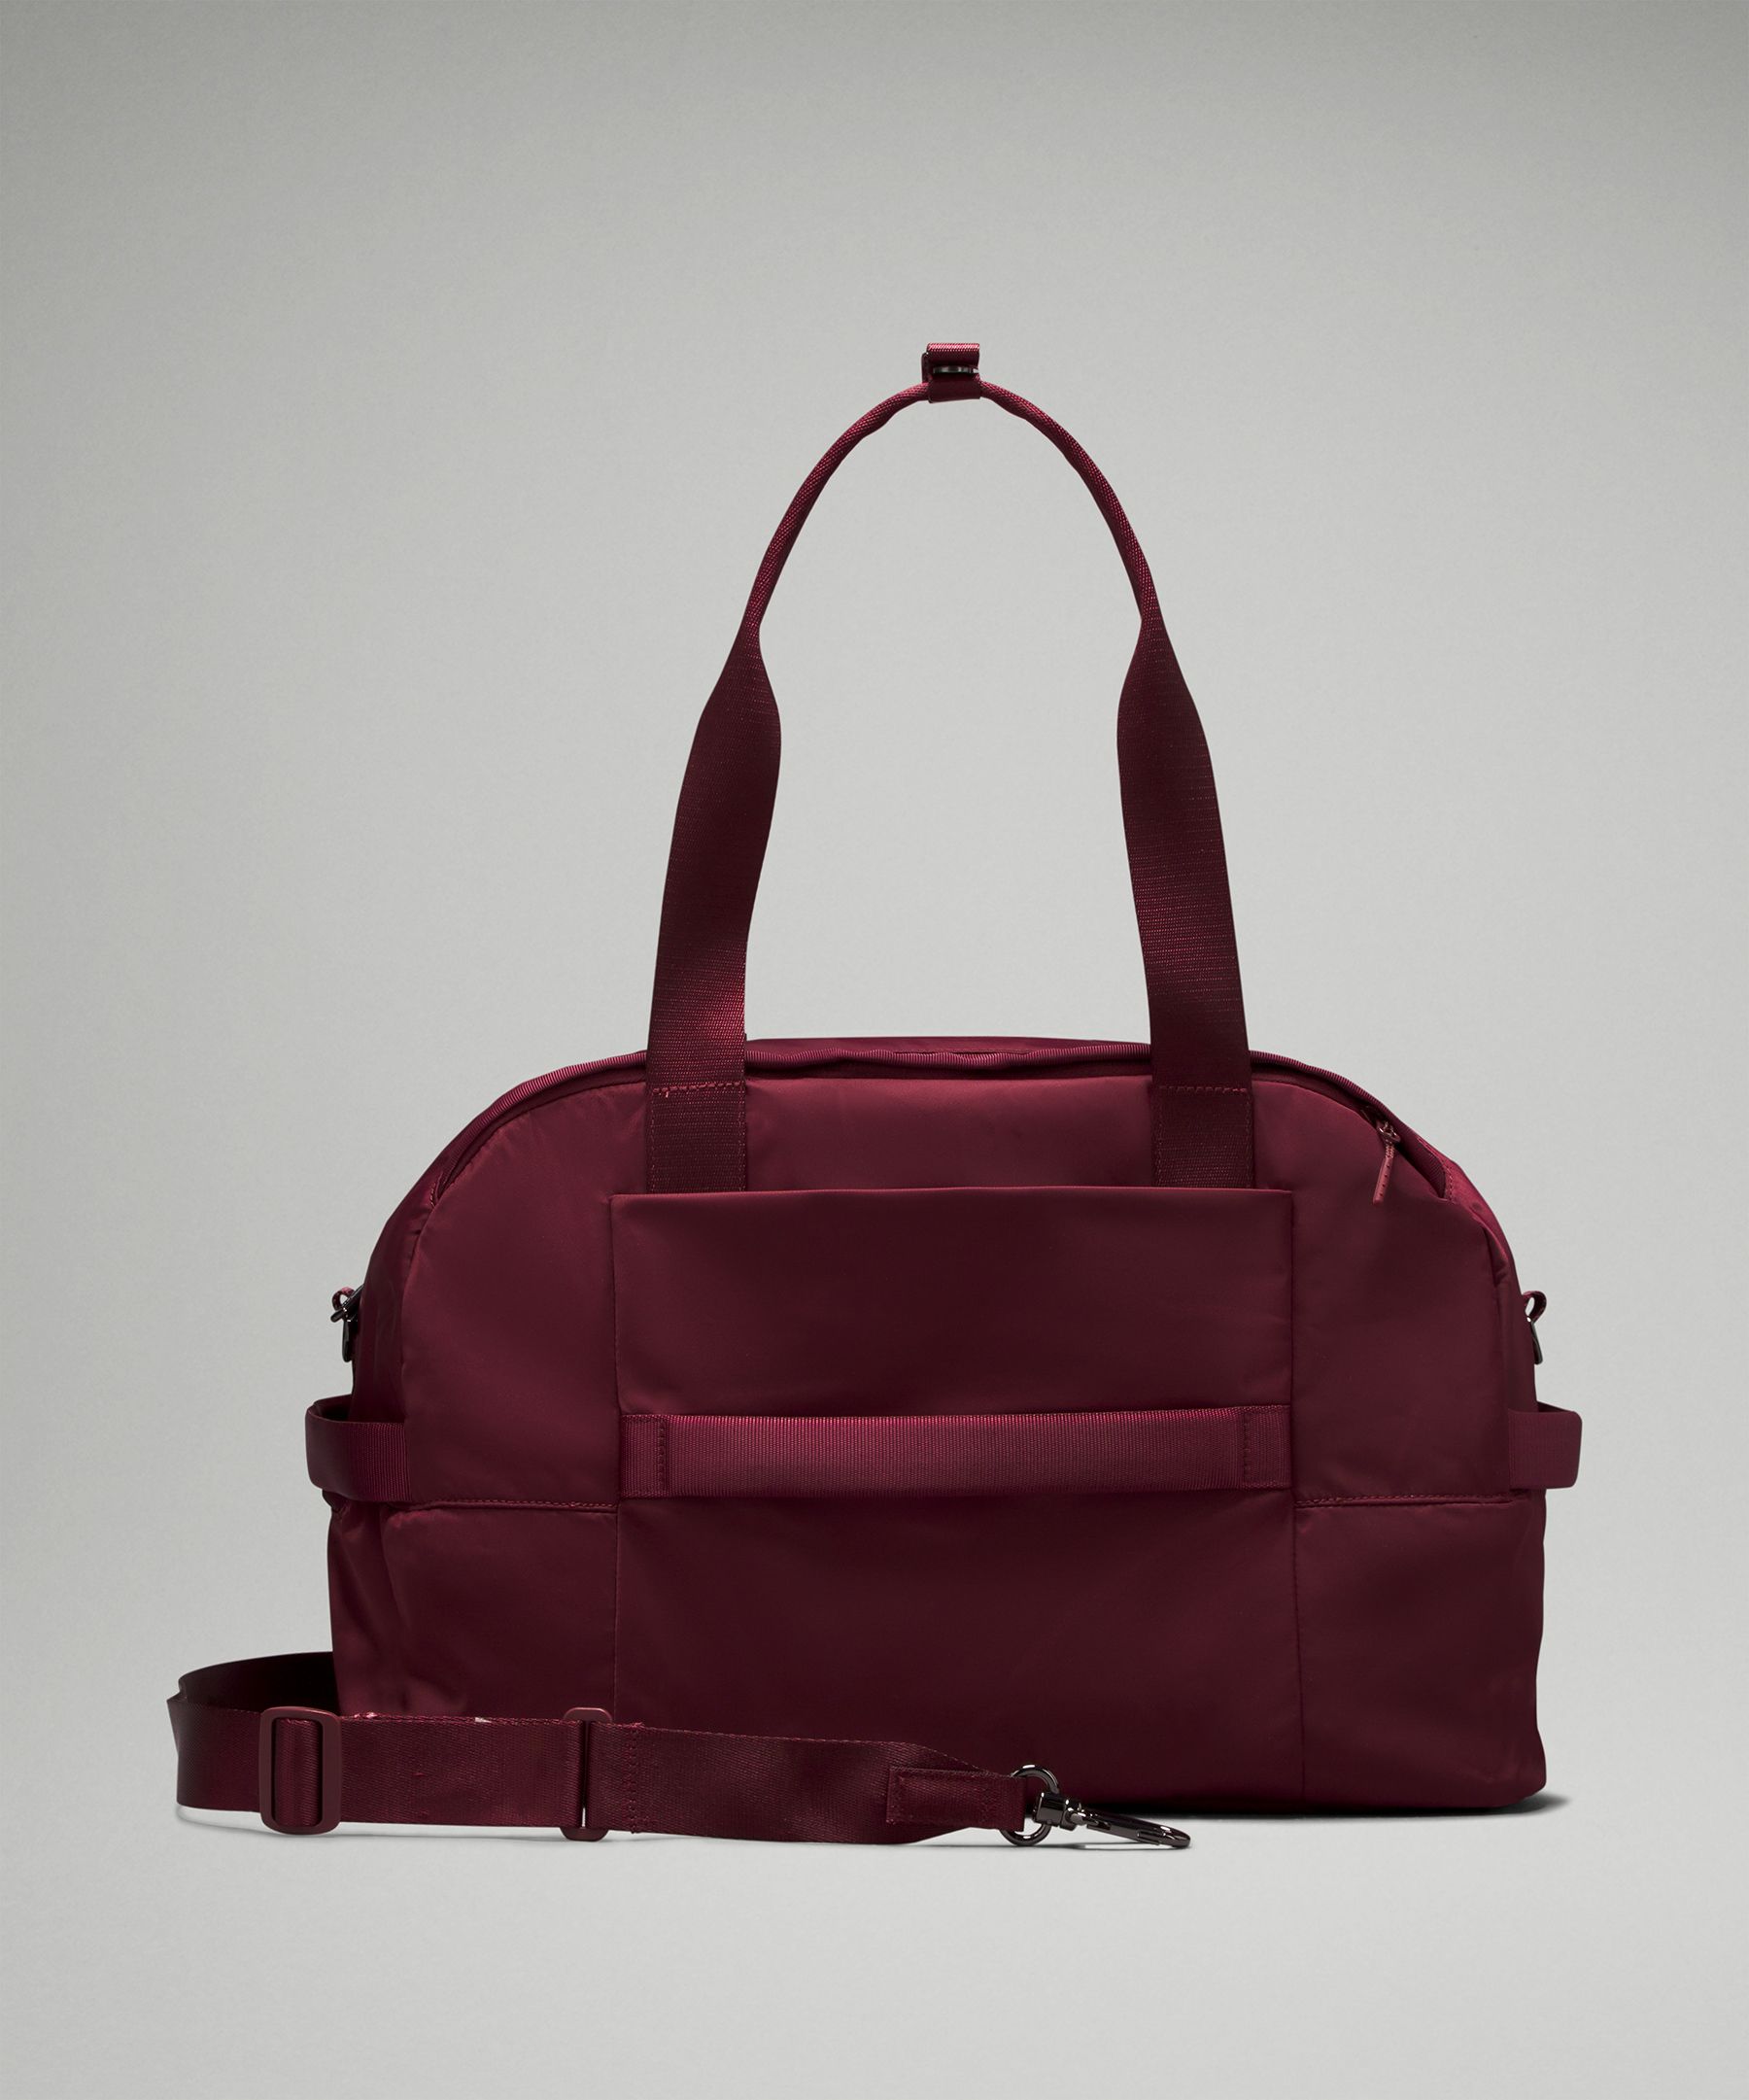 City Adventurer Duffle Bag 29L  Women's Bags,Purses,Wallets